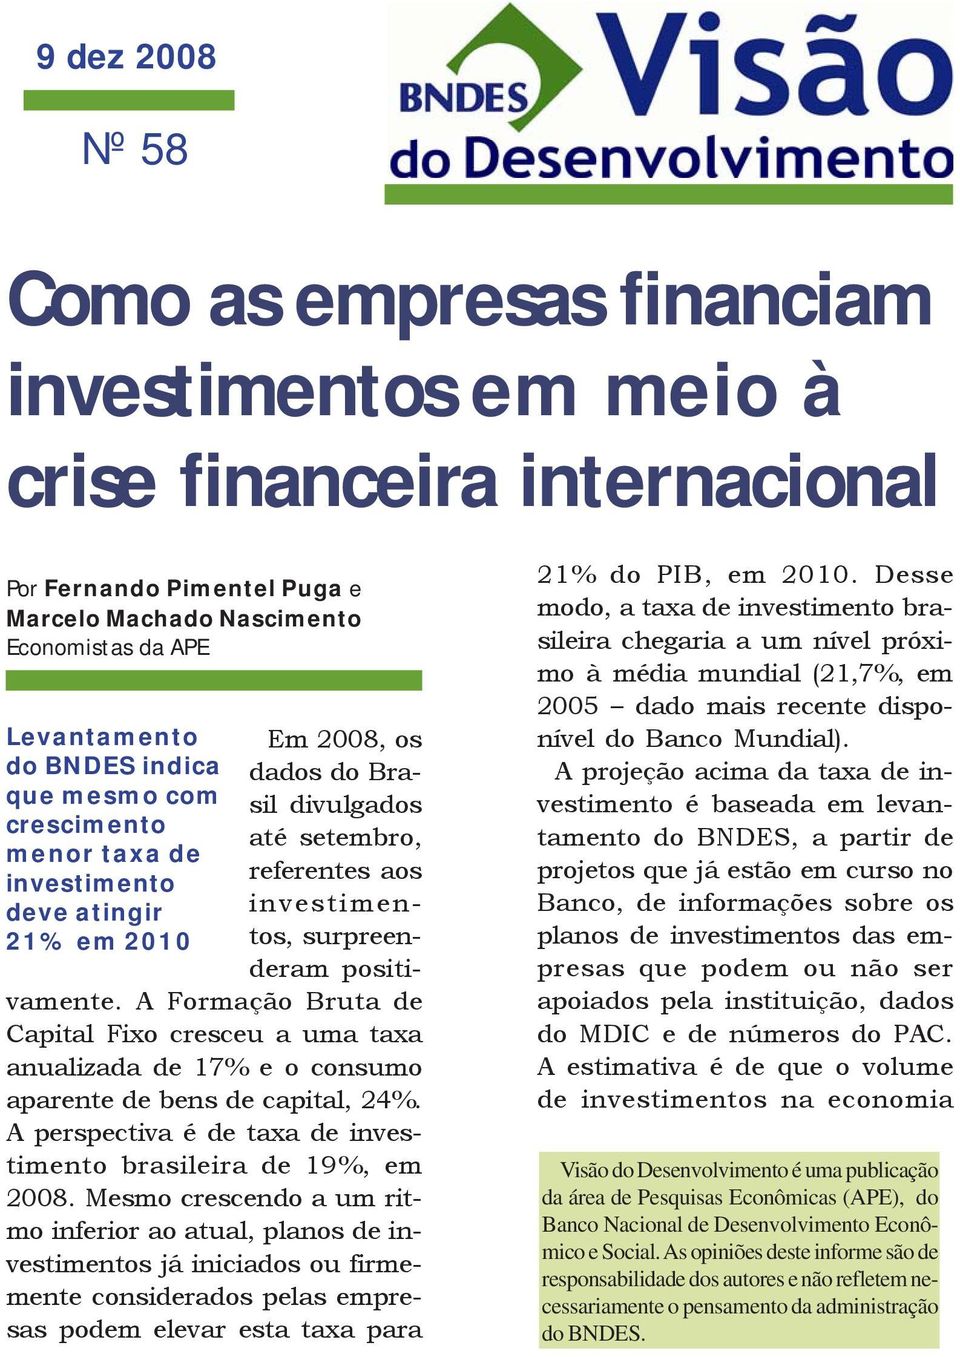 A Formação Bruta de Capital Fixo cresceu a uma taxa anualizada de 17% e o consumo aparente de bens de capital, 24%. A perspectiva é de taxa de investimento brasileira de 19%, em 2008.